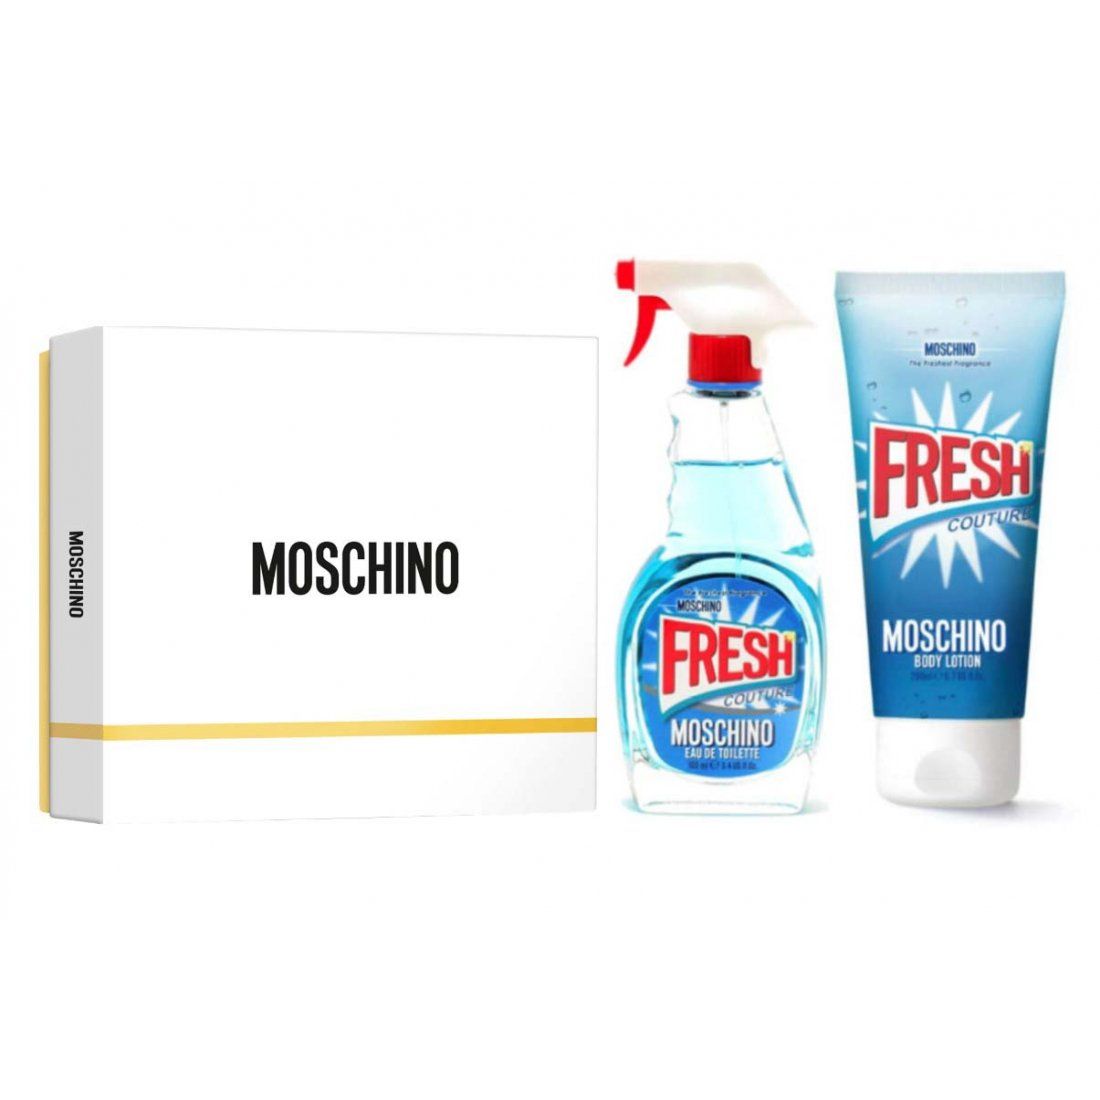 Moschino - Coffret de parfum 'Fresh Couture' - 2 Pièces